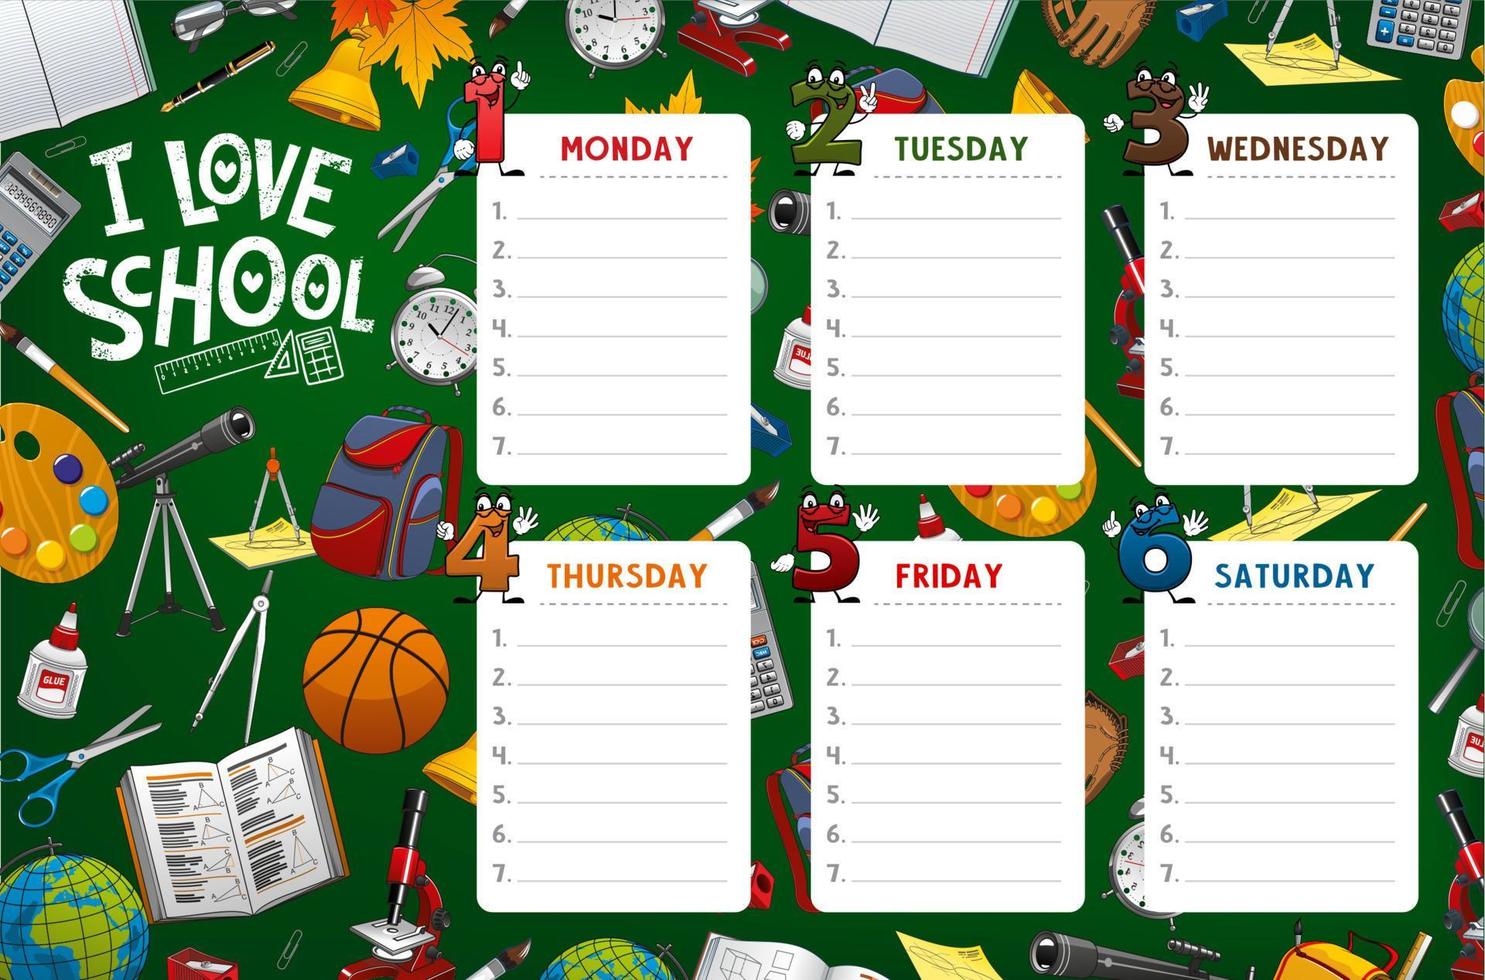 School timetable week schedule, classes supplies vector